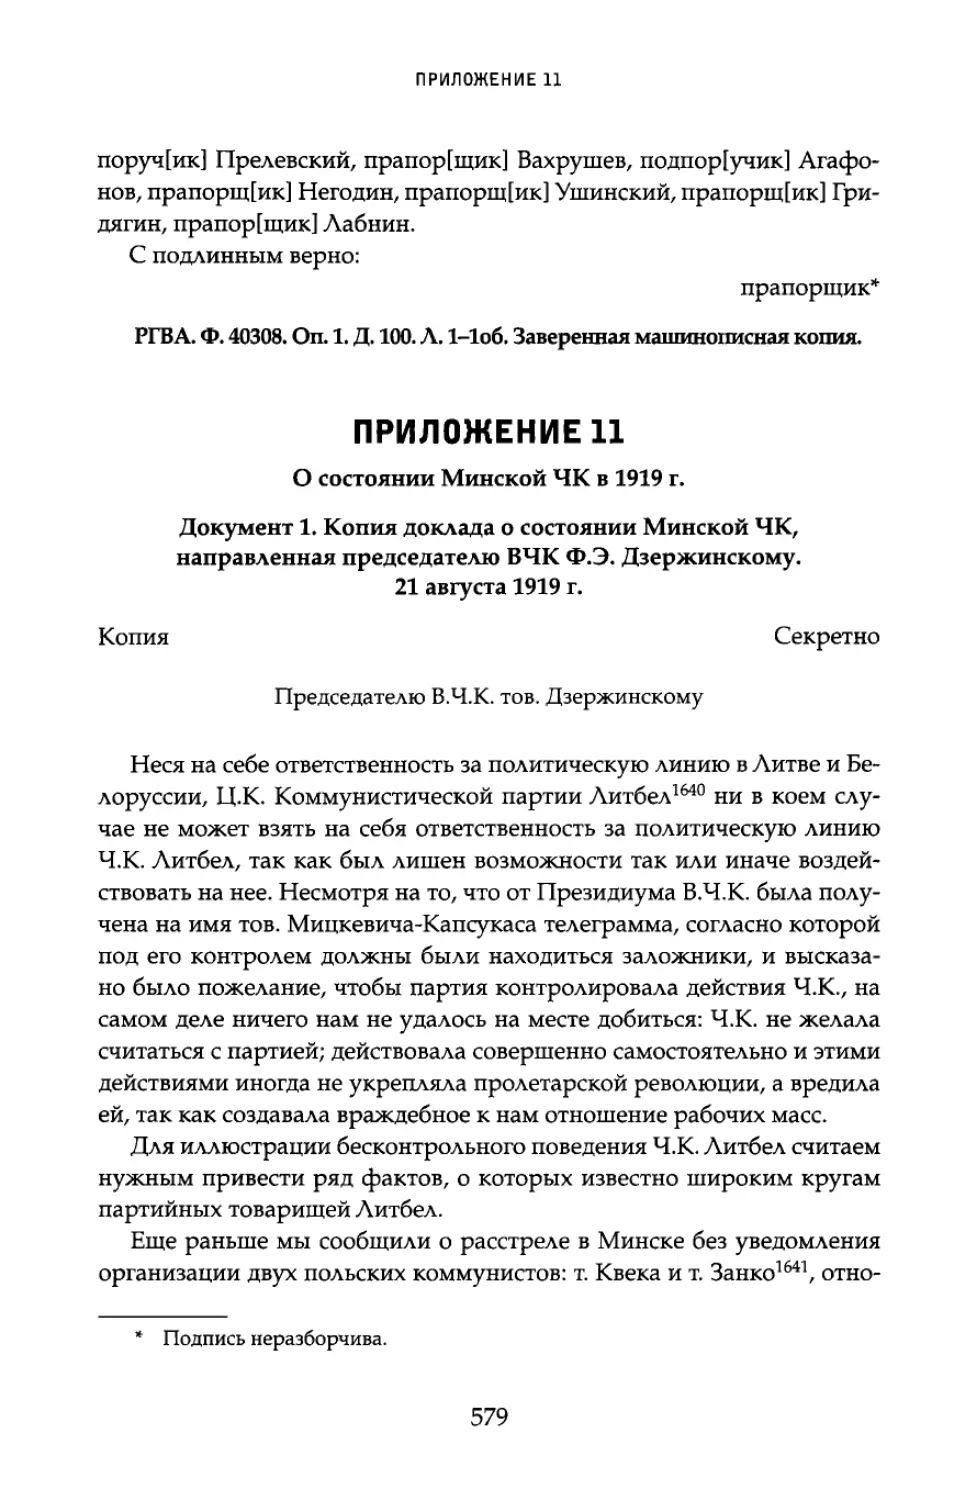 Приложение 11. О состоянии Минской ЧК в 1919 г.